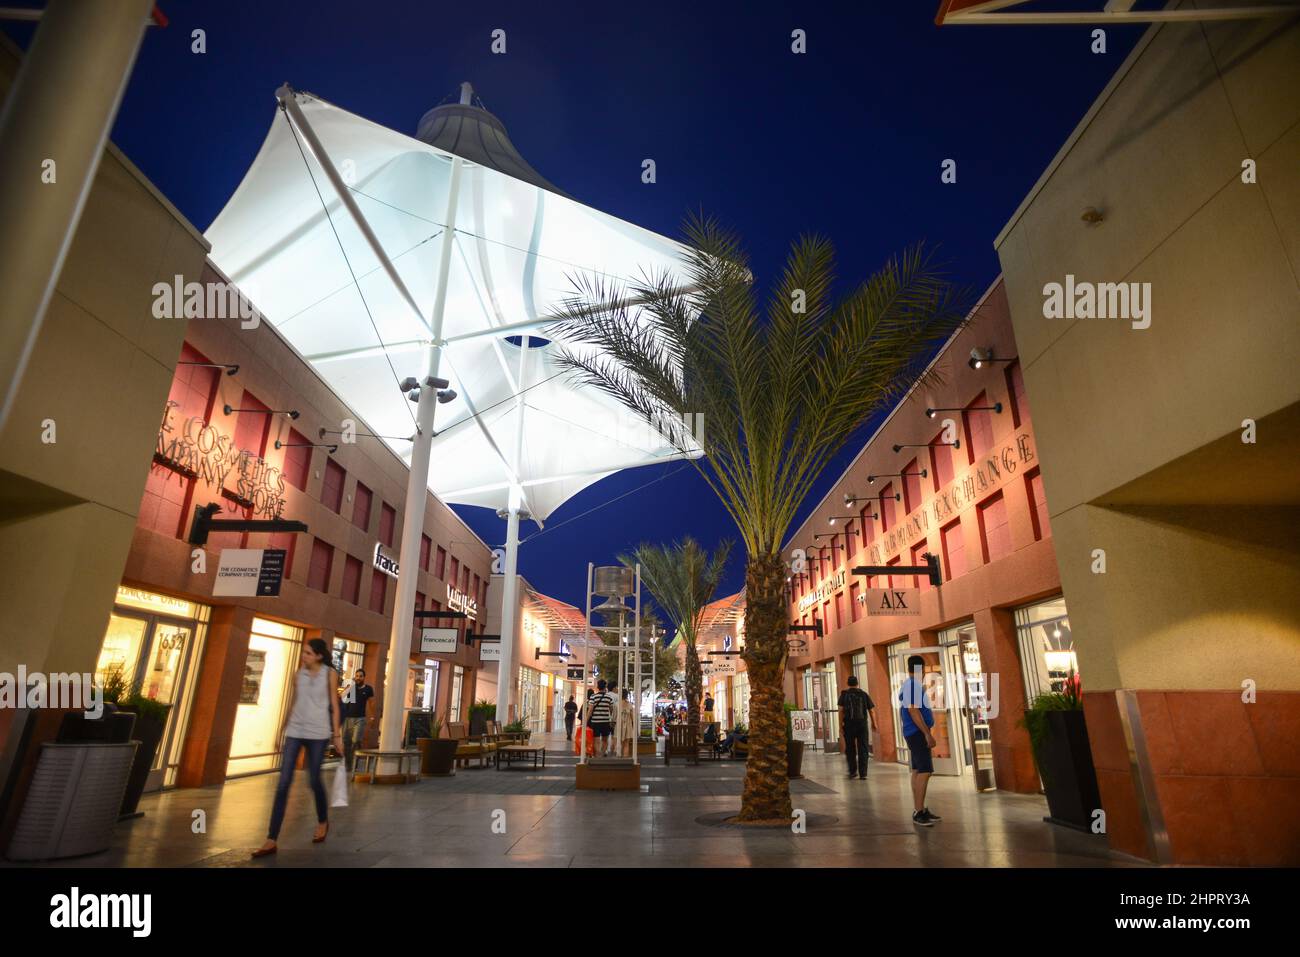 Las Vegas Premium Outlets Stock Photo - Download Image Now - IHOP